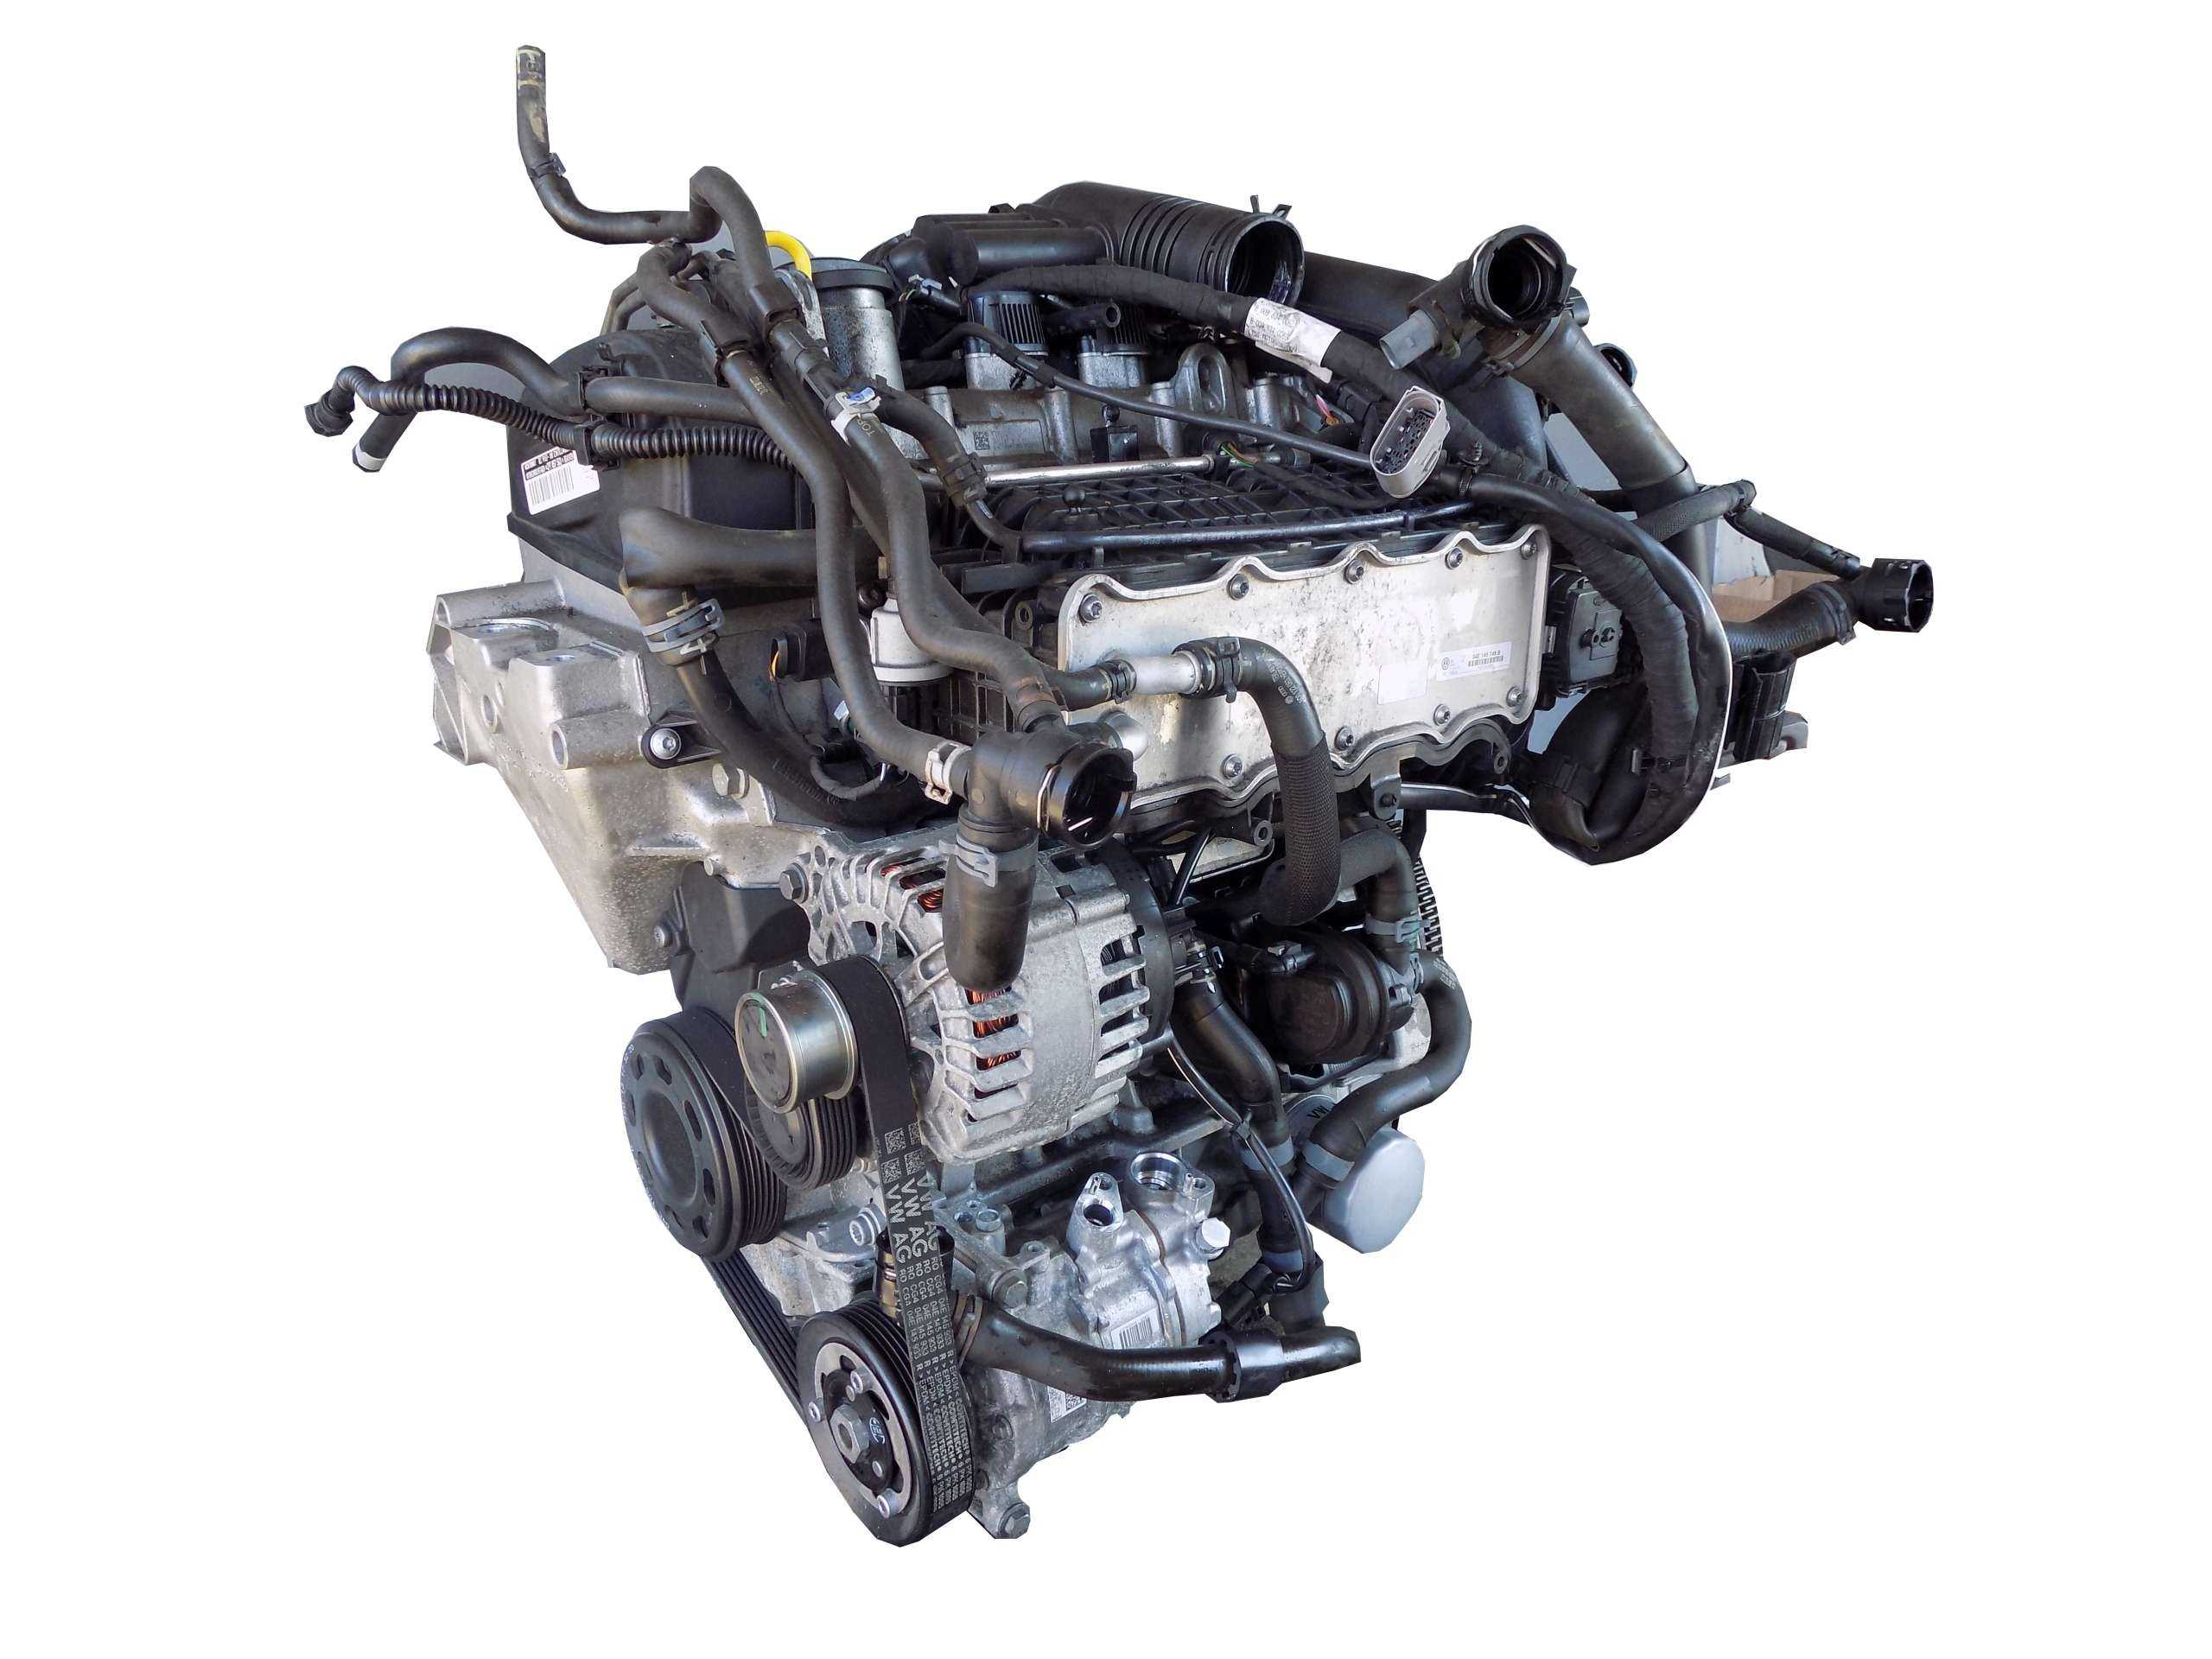 Двигатель caxa - характеристики, проблемы, модификации и надежность